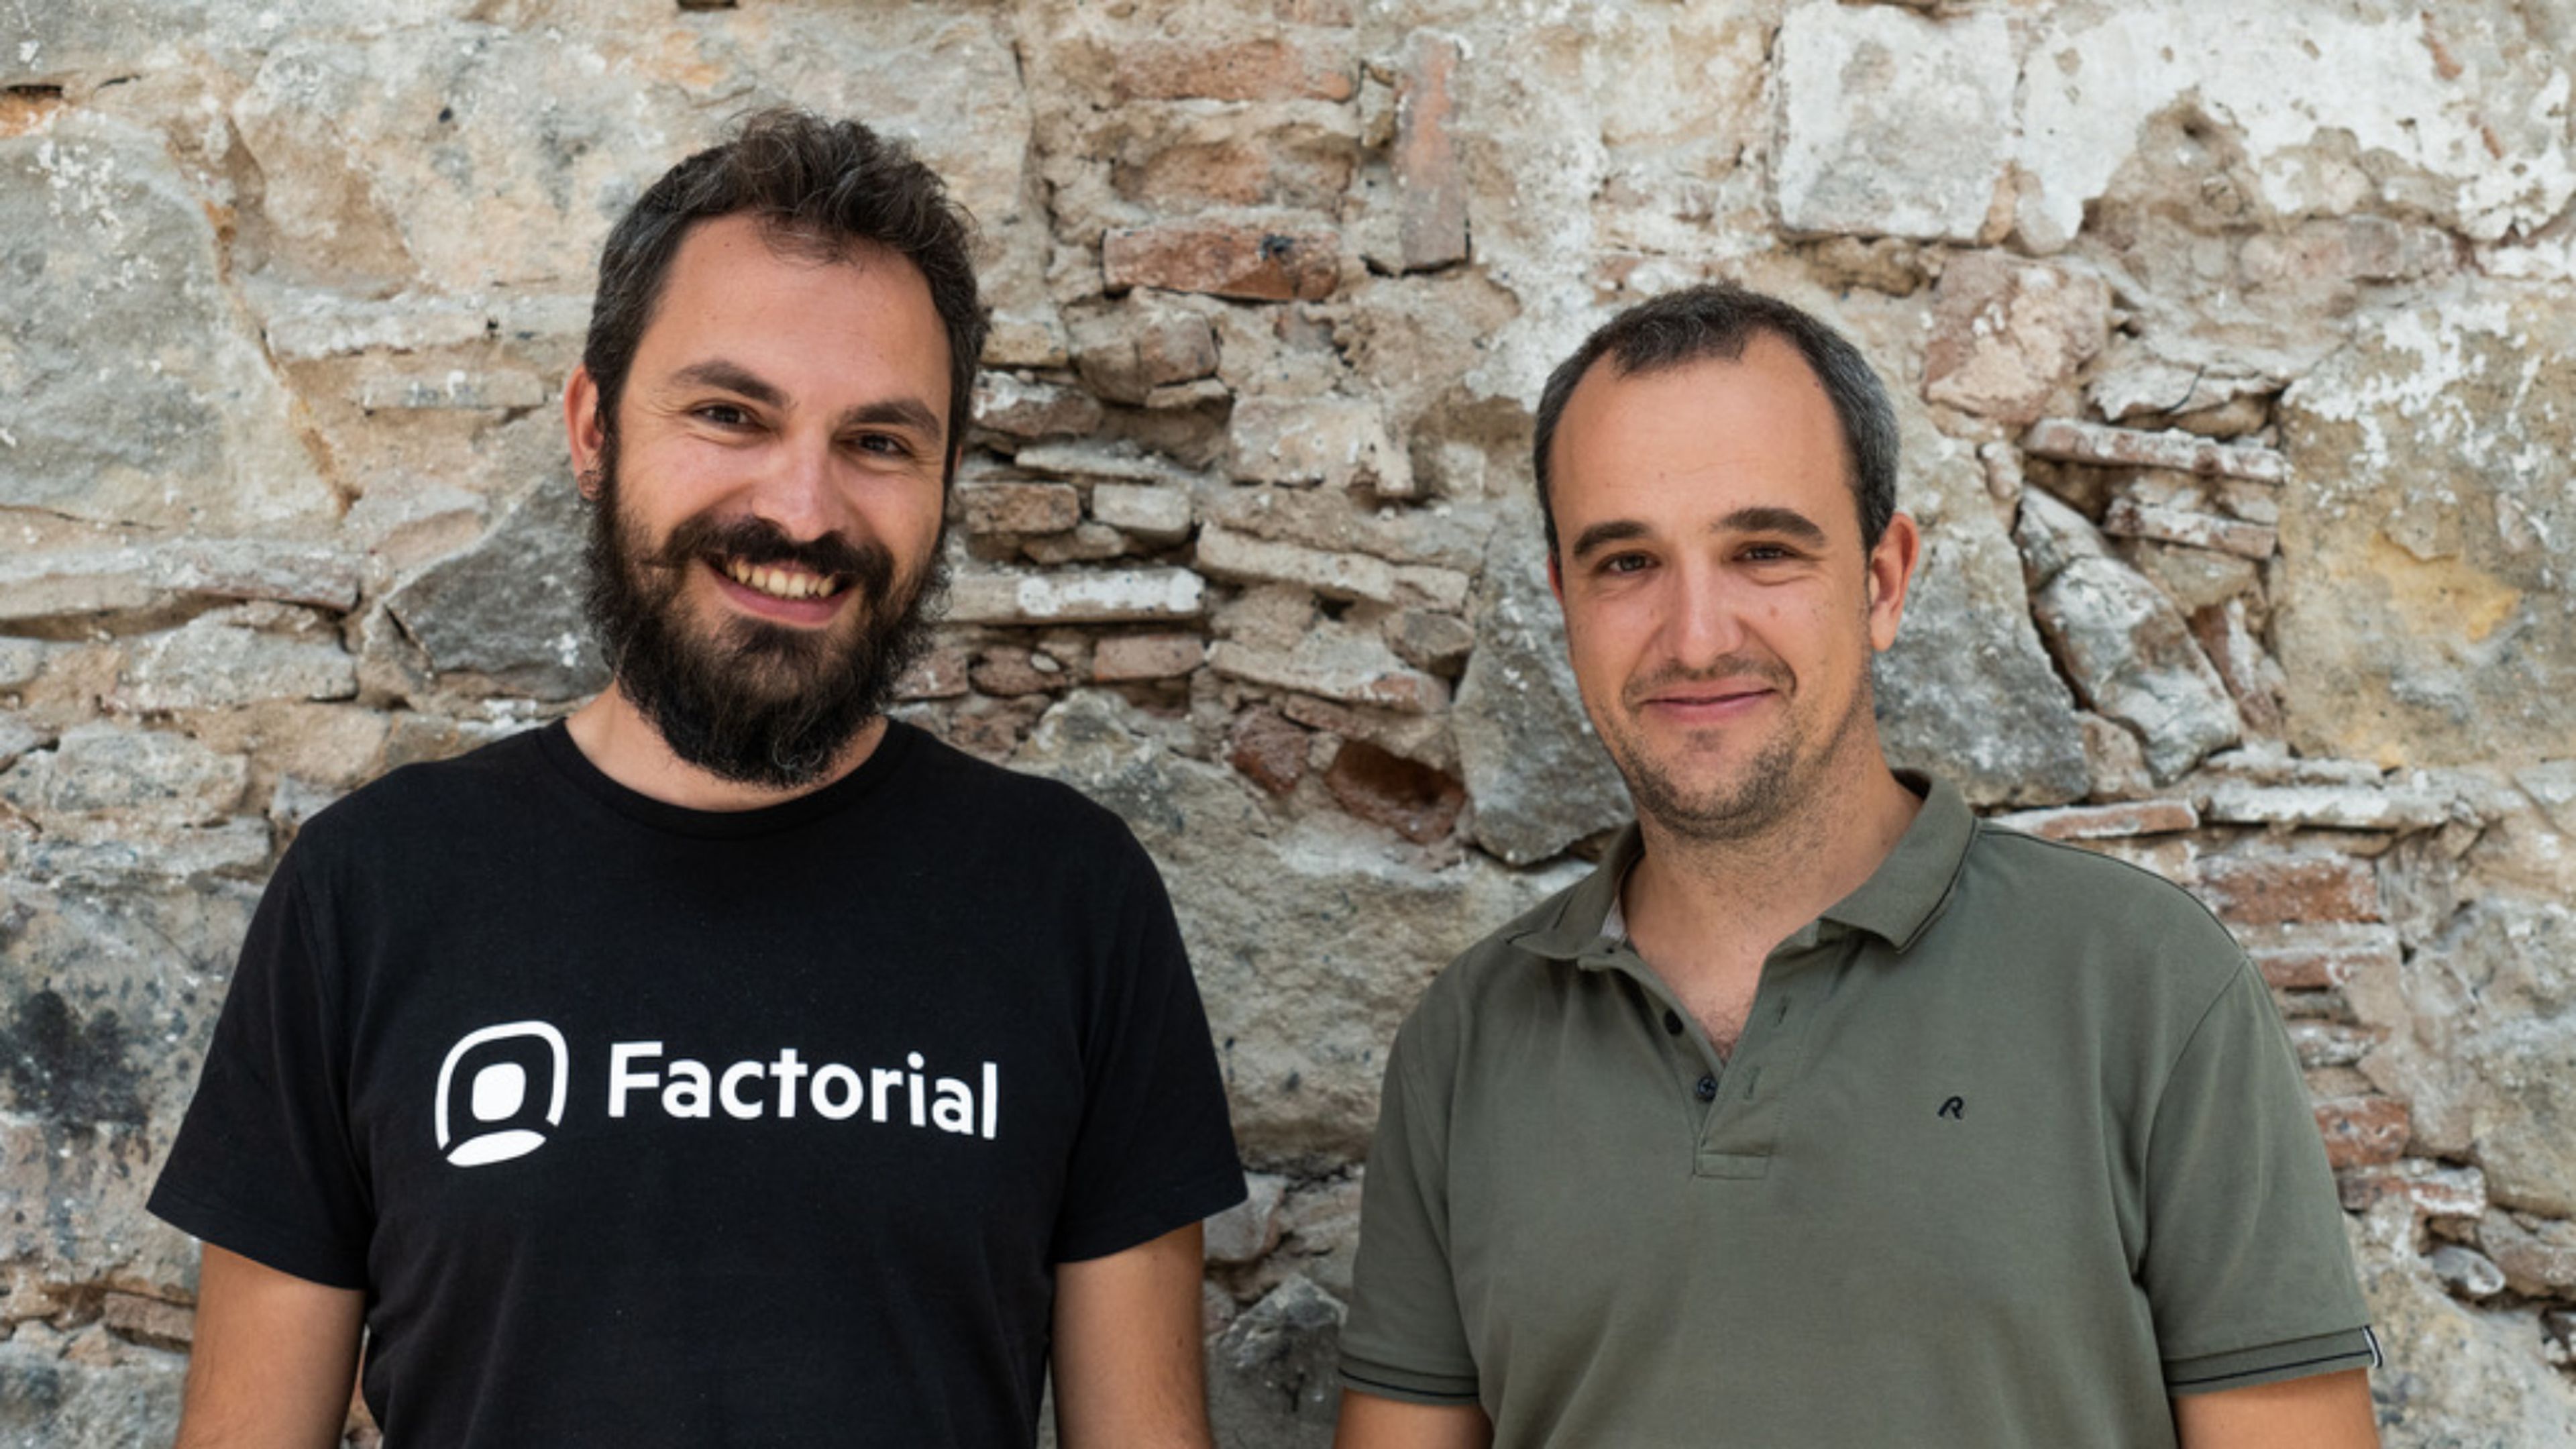 Dos de los fundadores de Factorial, Jordi Romero y Bernat Farrero.